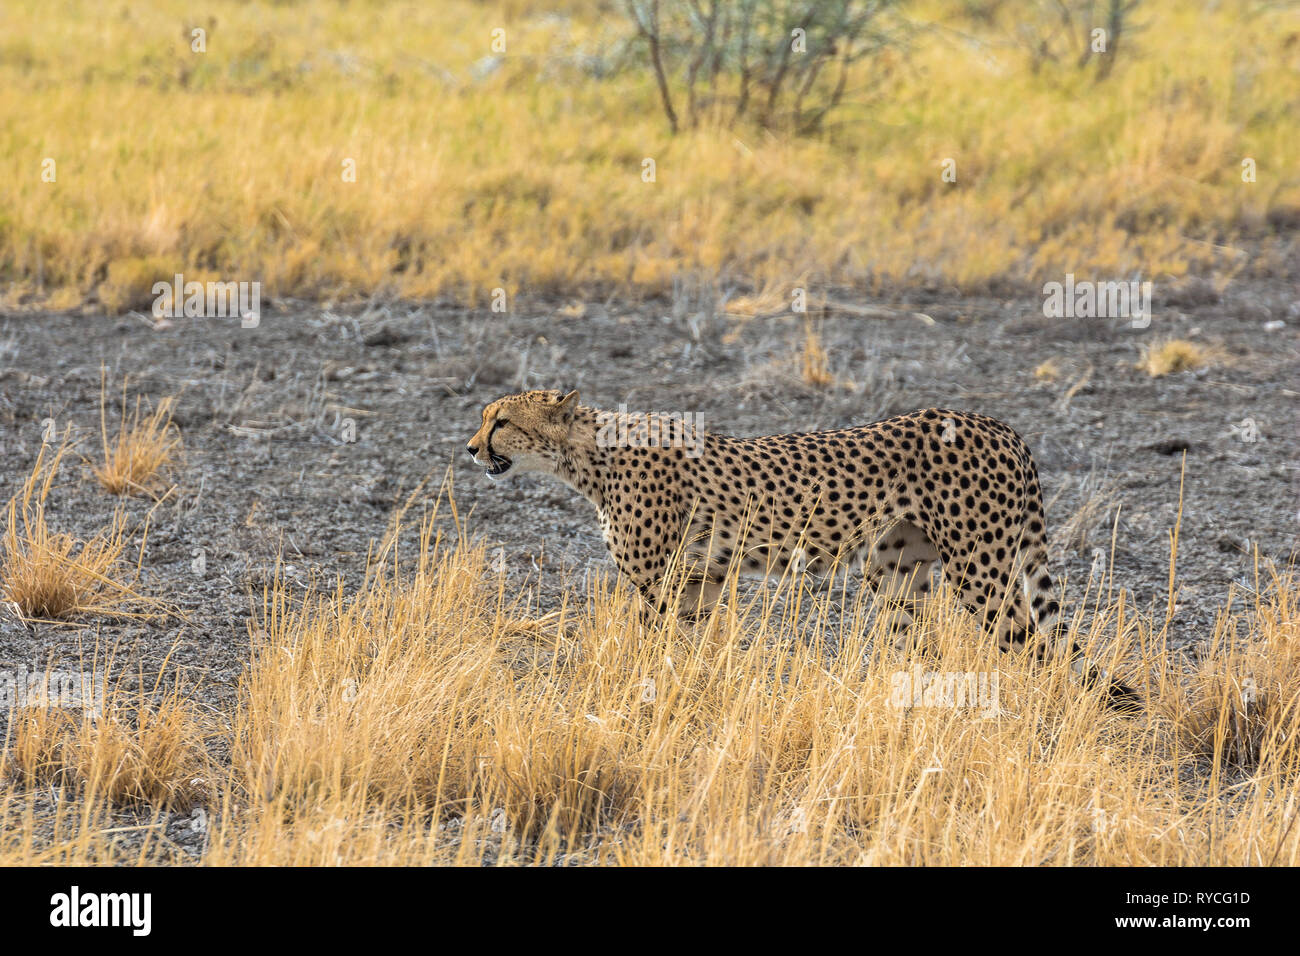 Cheetah in the grass of Etosha Park, Namibia Stock Photo